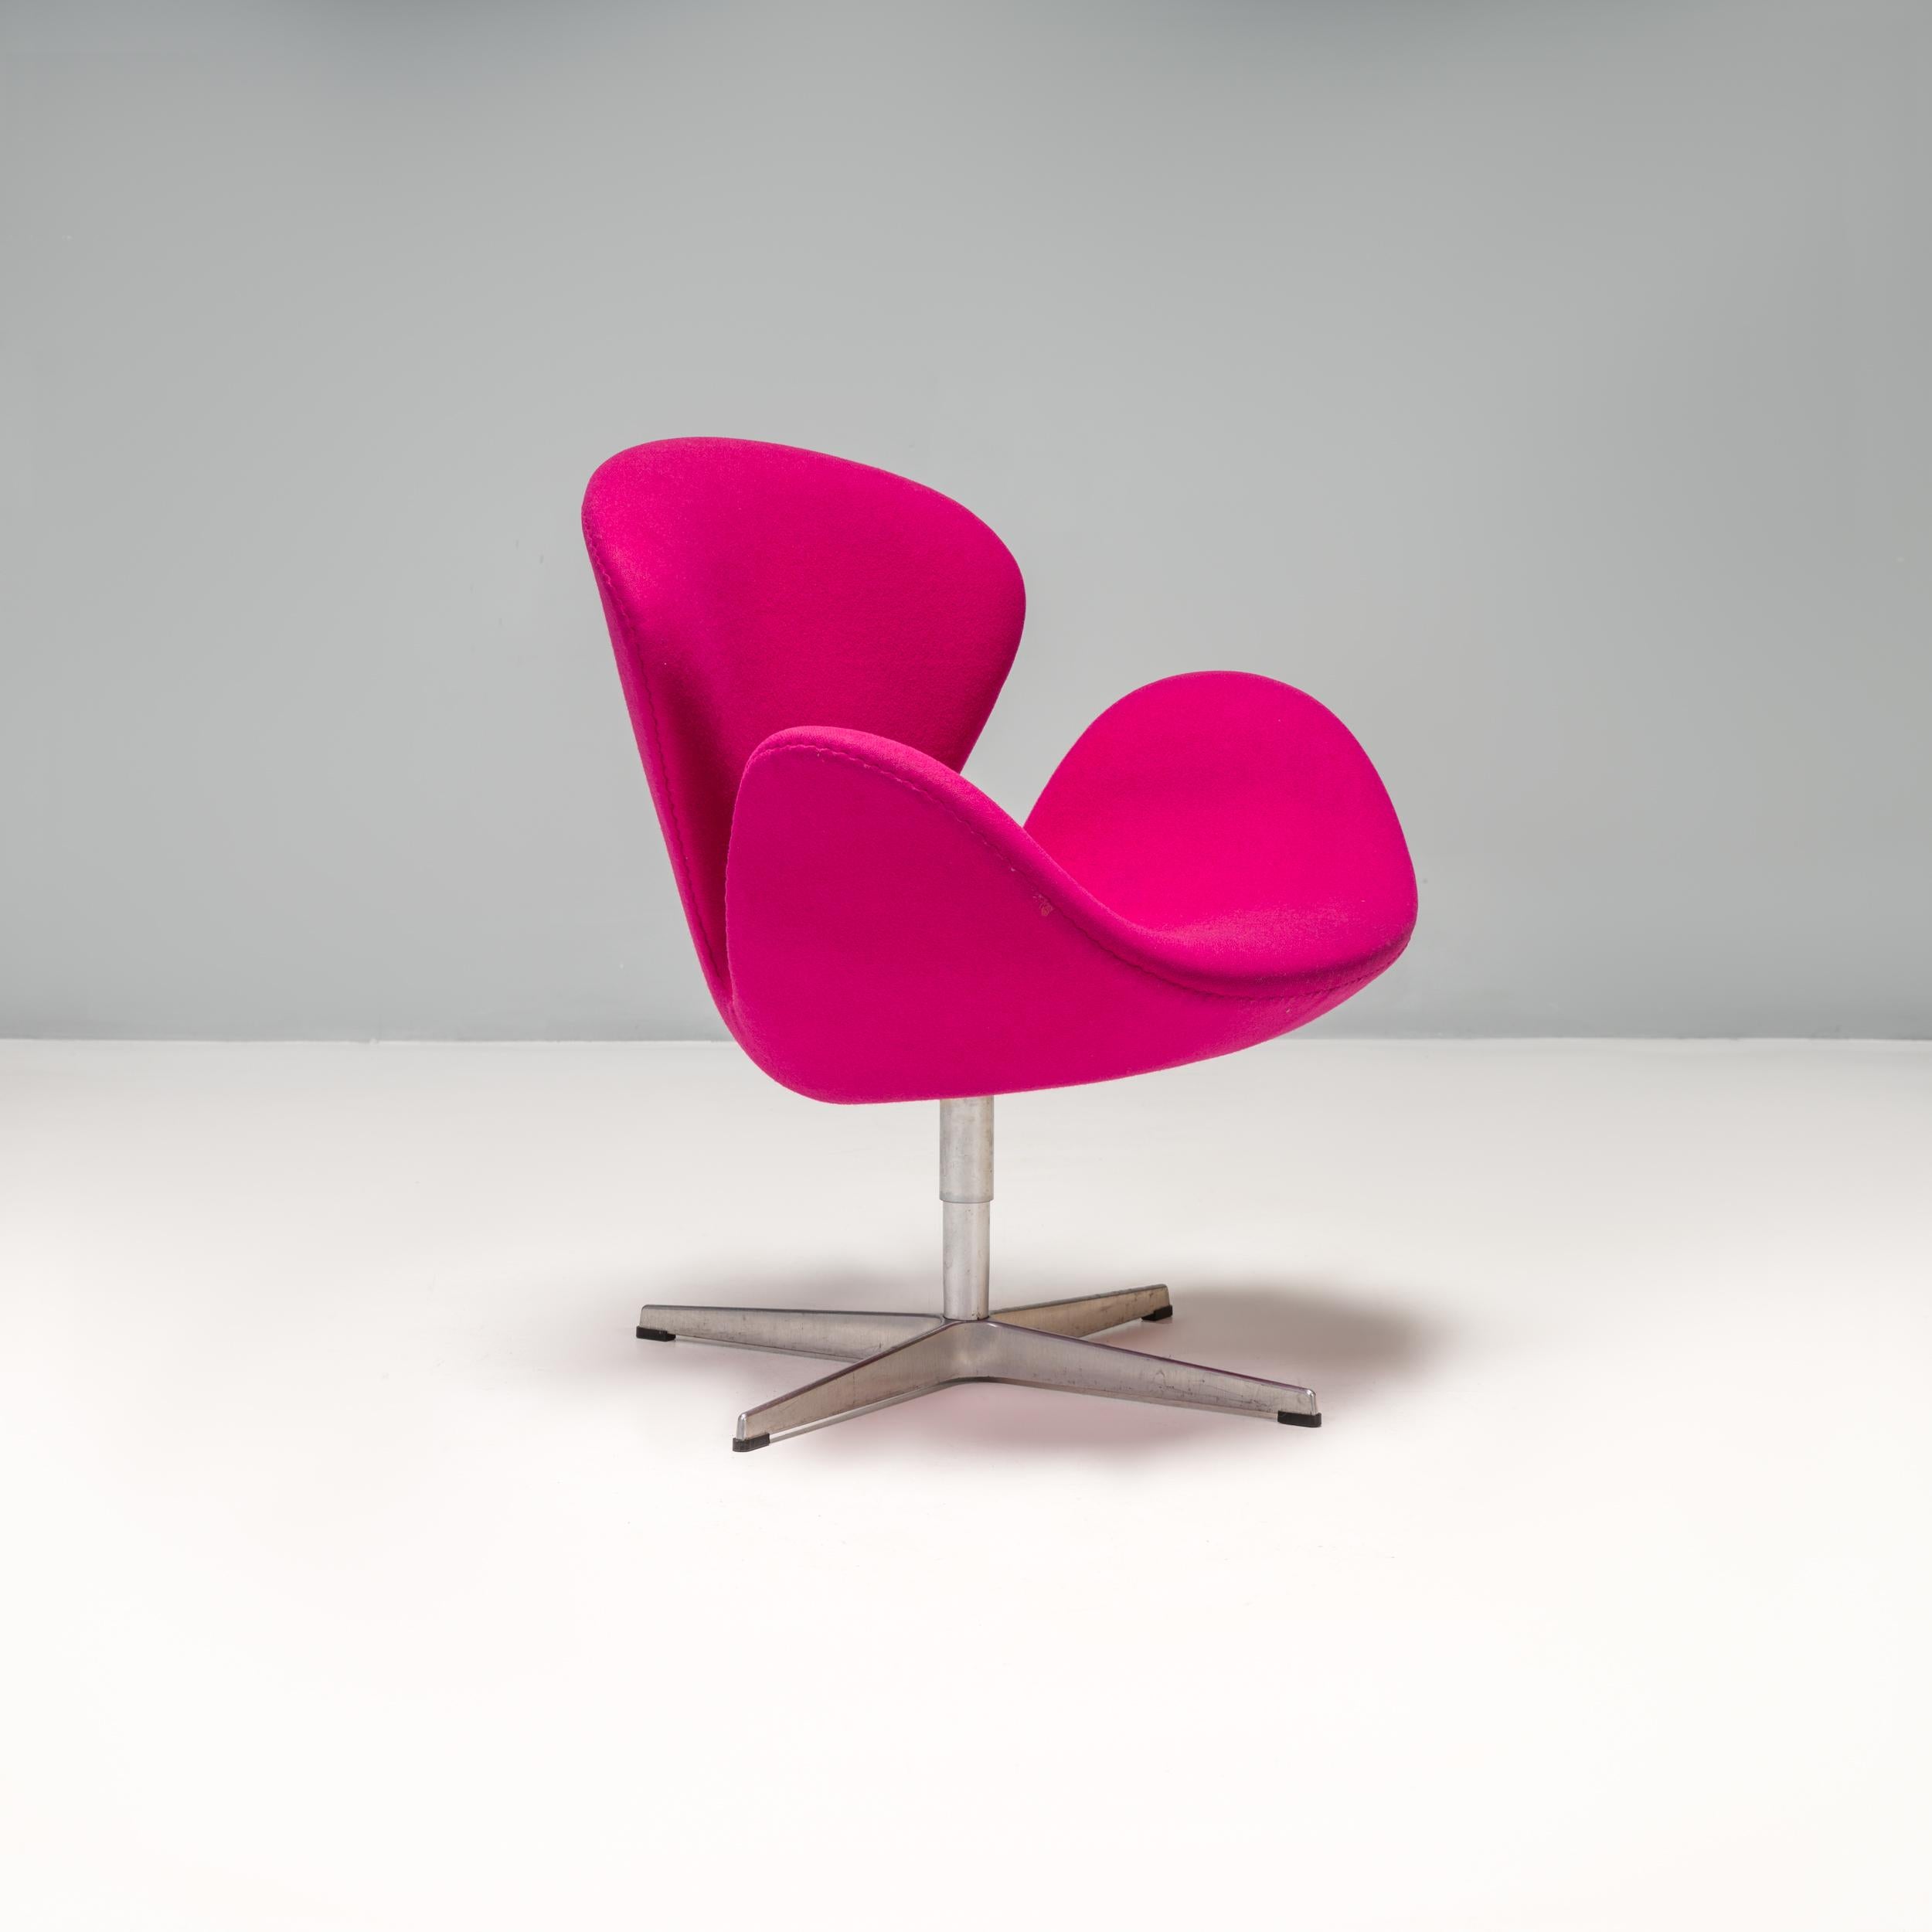 Conçu à l'origine par Arne Jacobsen en 1958 pour le SAS Royal Hotel de Copenhague, le fauteuil cygne était révolutionnaire à l'époque et est devenu un véritable classique.

La silhouette galbée crée un siège enveloppant avec des accoudoirs et des